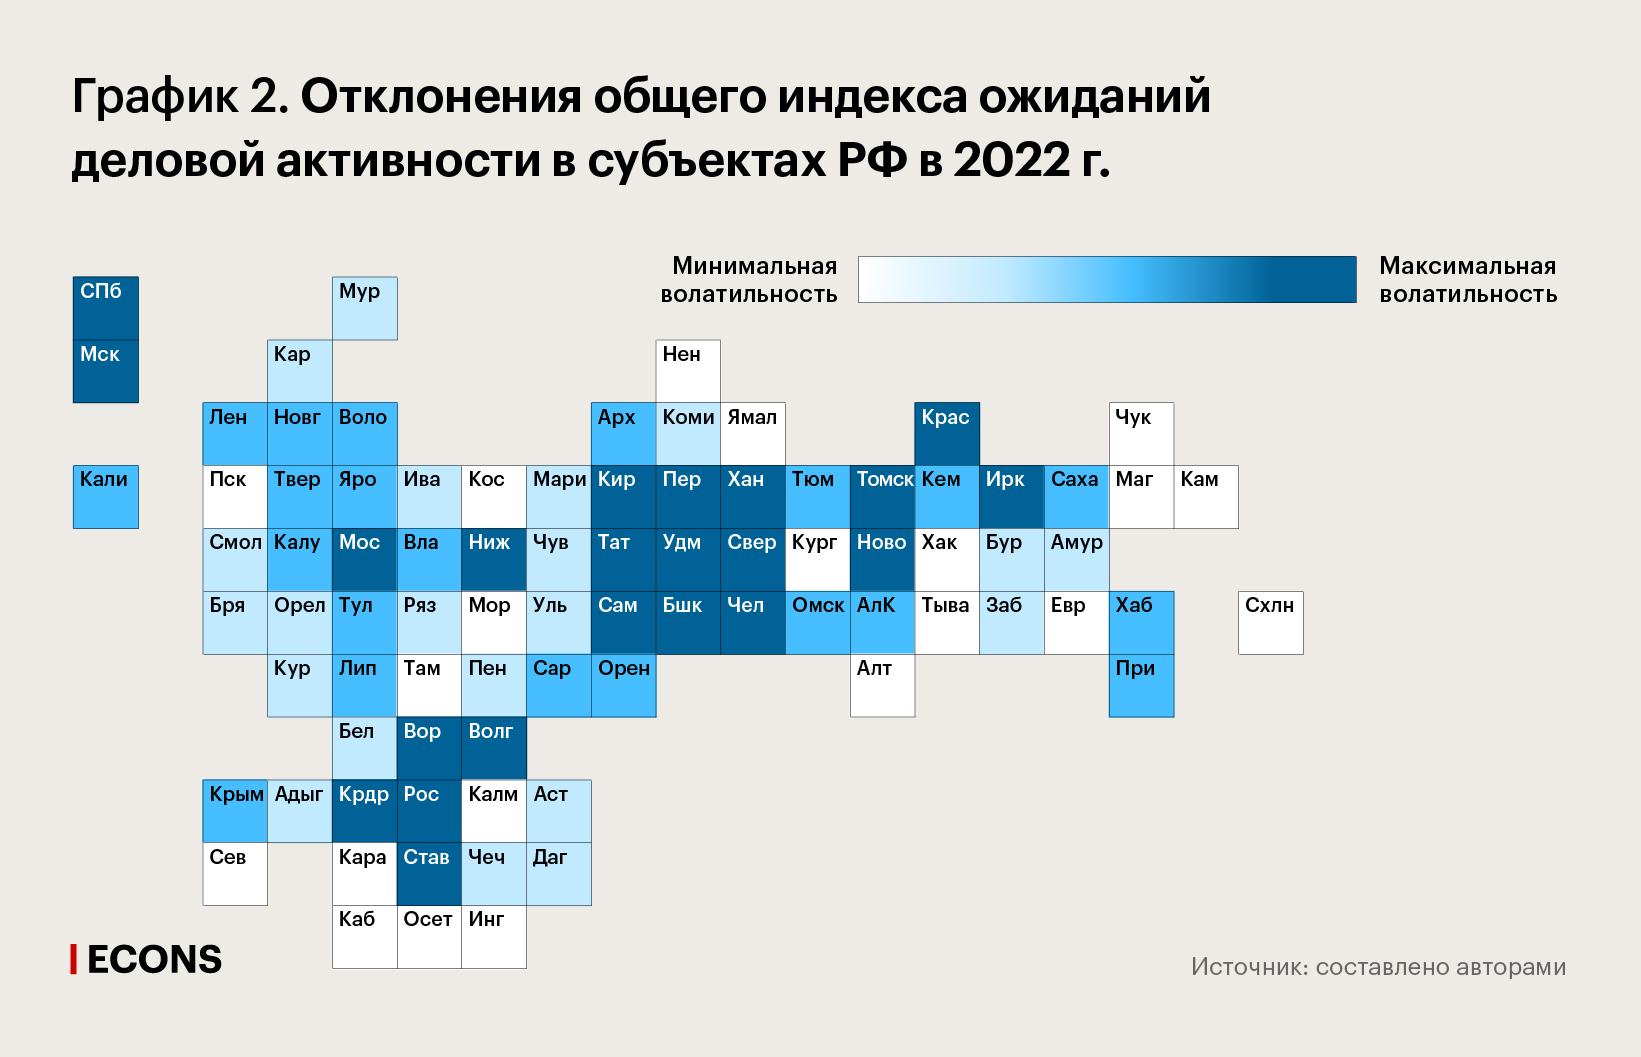 Отклонения общего индекса ожиданий деловой активности в субъектах РФ в 2022 г.